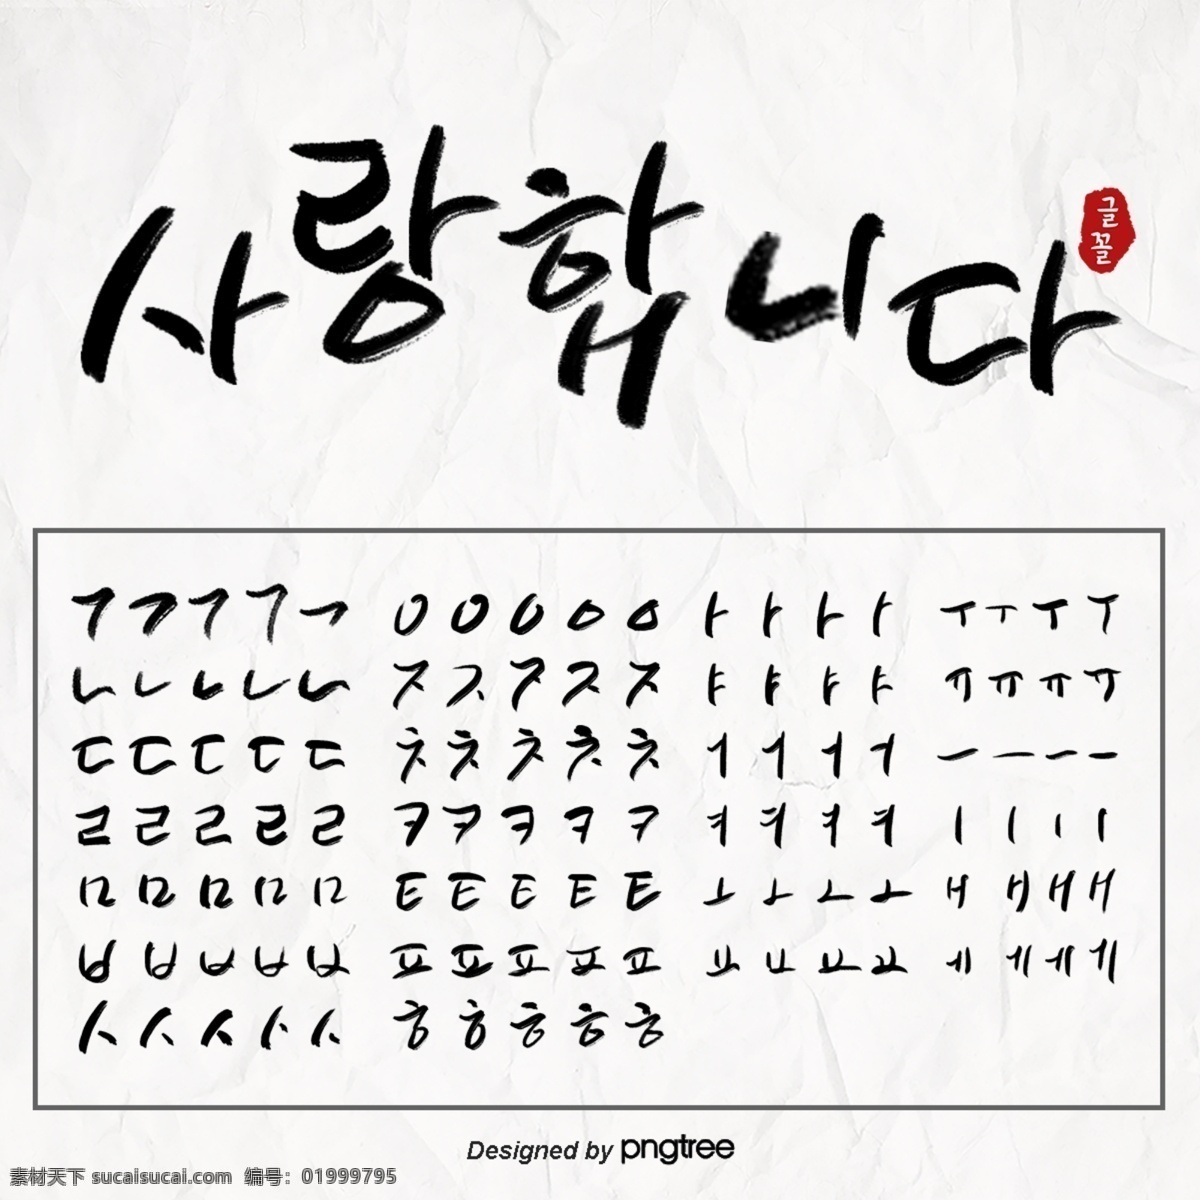 黑色 手印 韩文 书法 笔画 n 字体字体 书法笔画 字体 韩文字体 韩文笔画